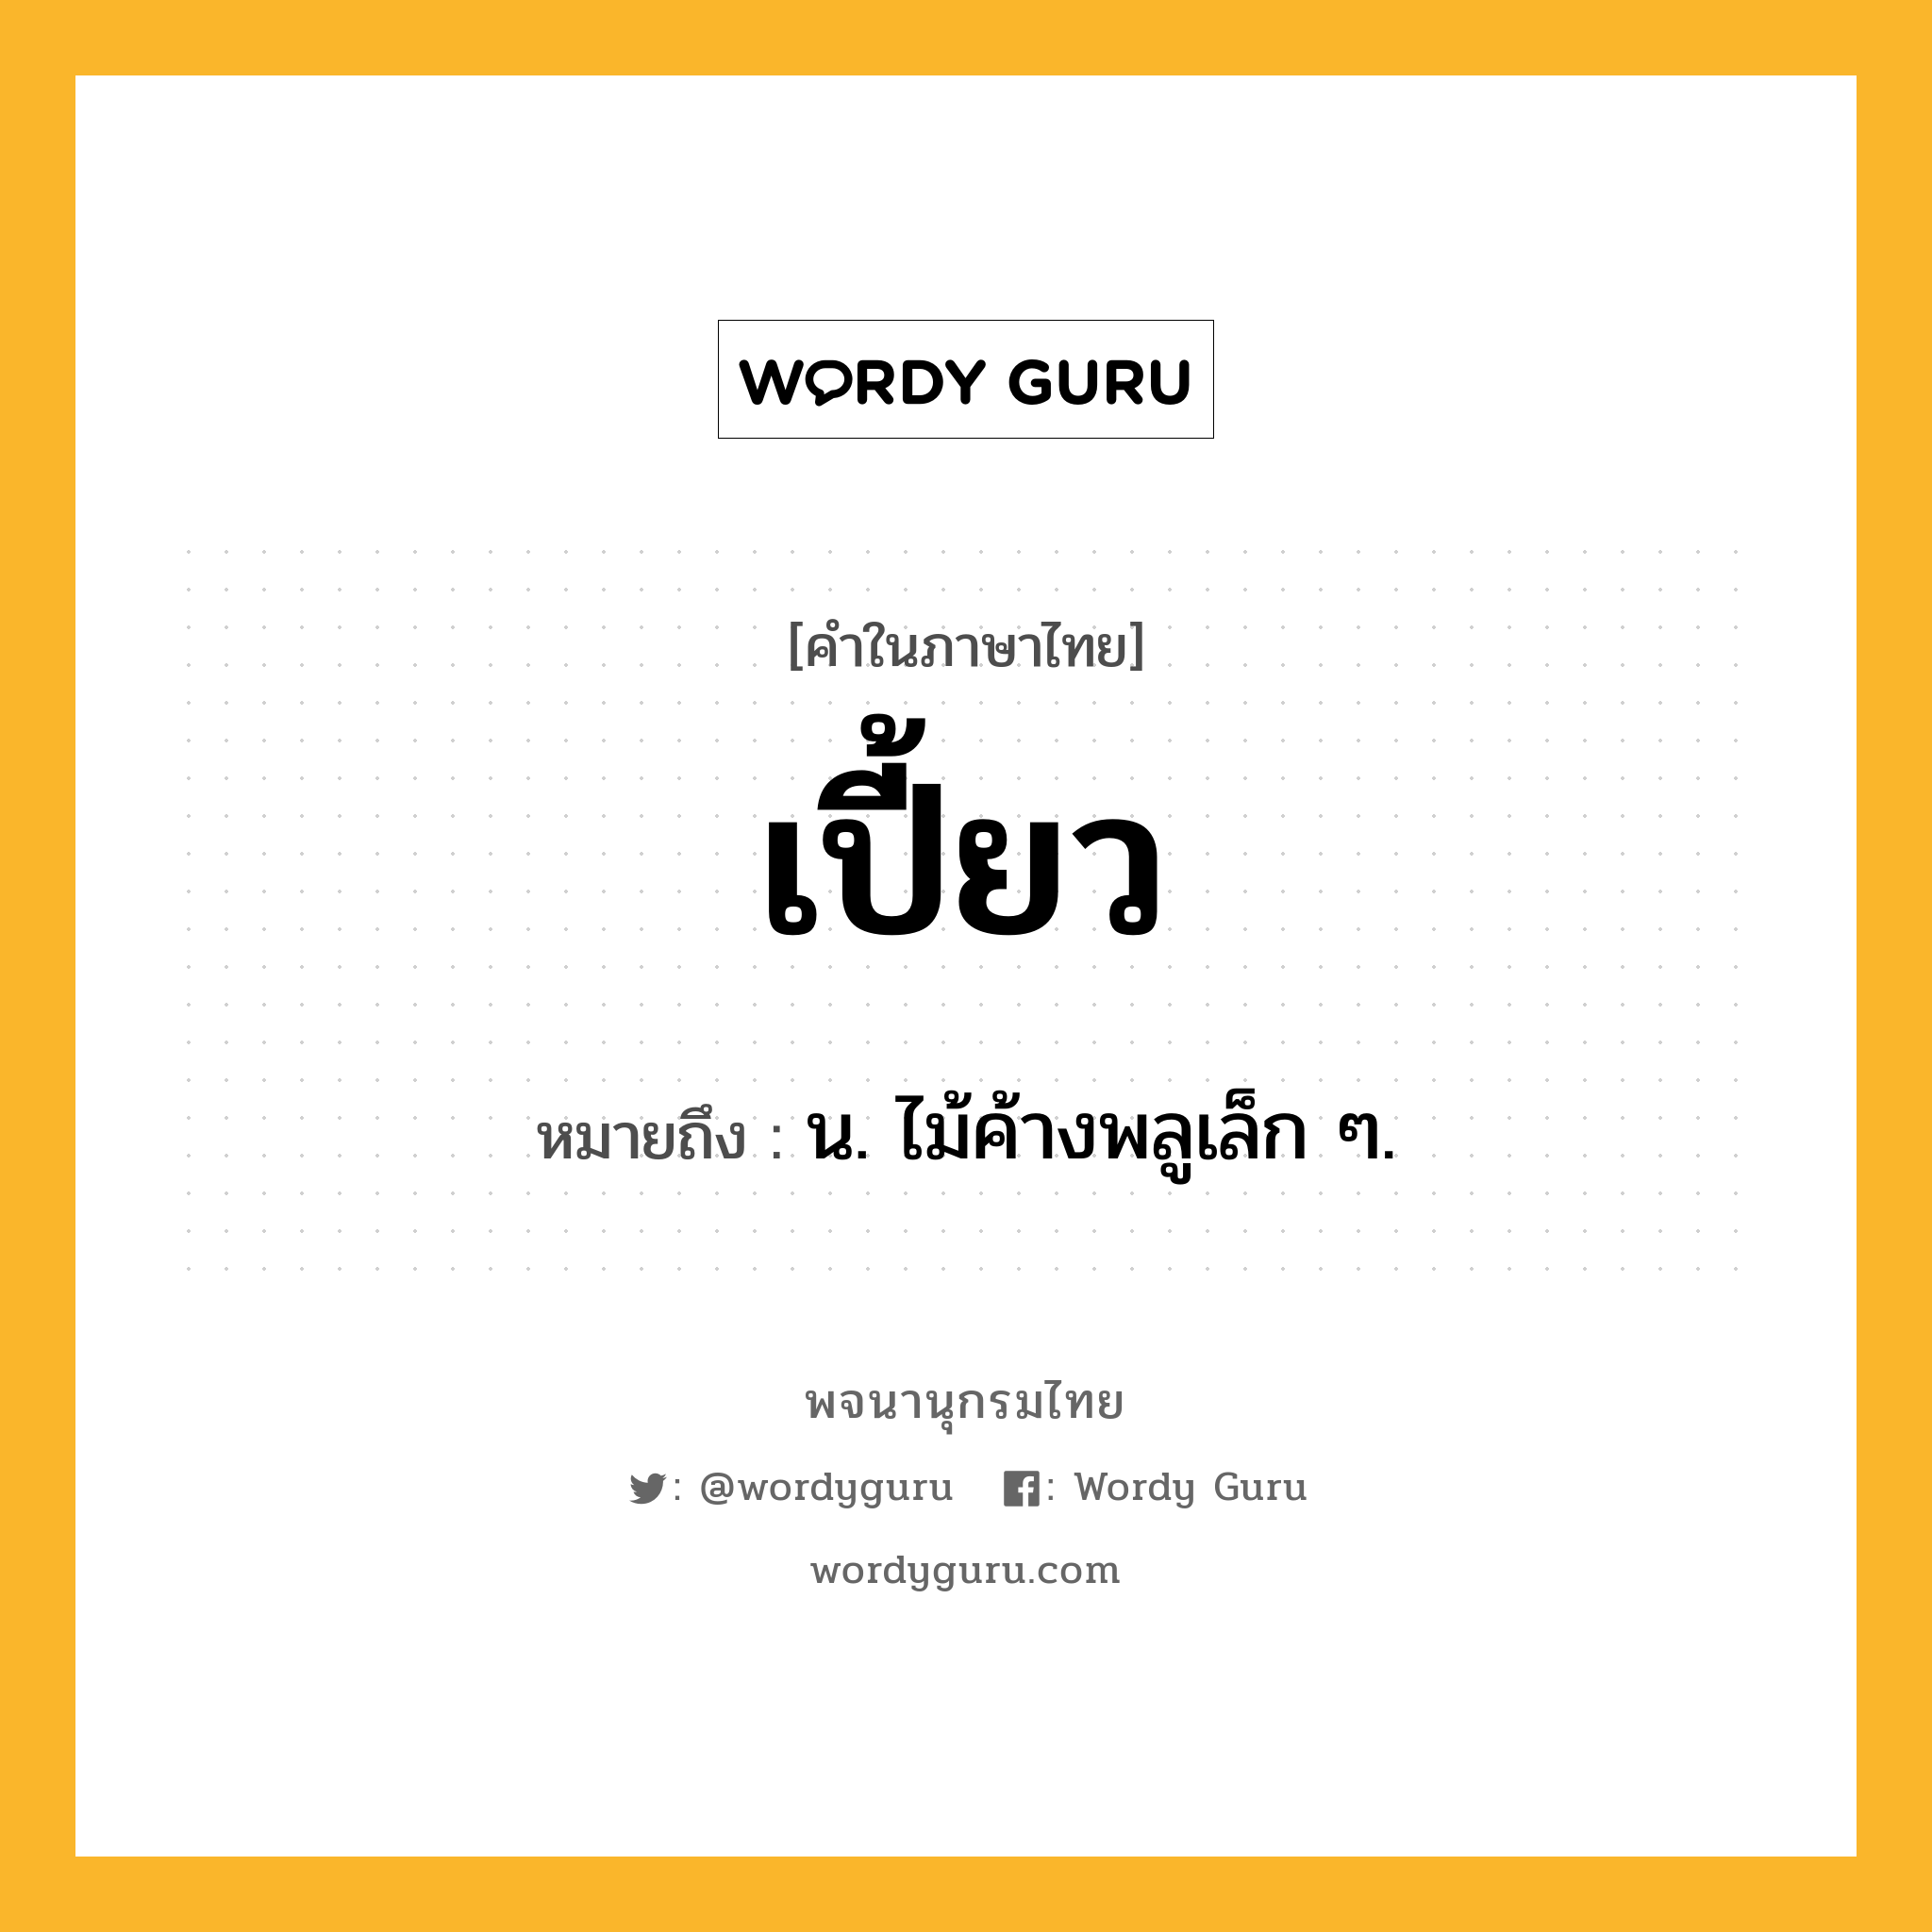 เปี้ยว หมายถึงอะไร?, คำในภาษาไทย เปี้ยว หมายถึง น. ไม้ค้างพลูเล็ก ๆ.